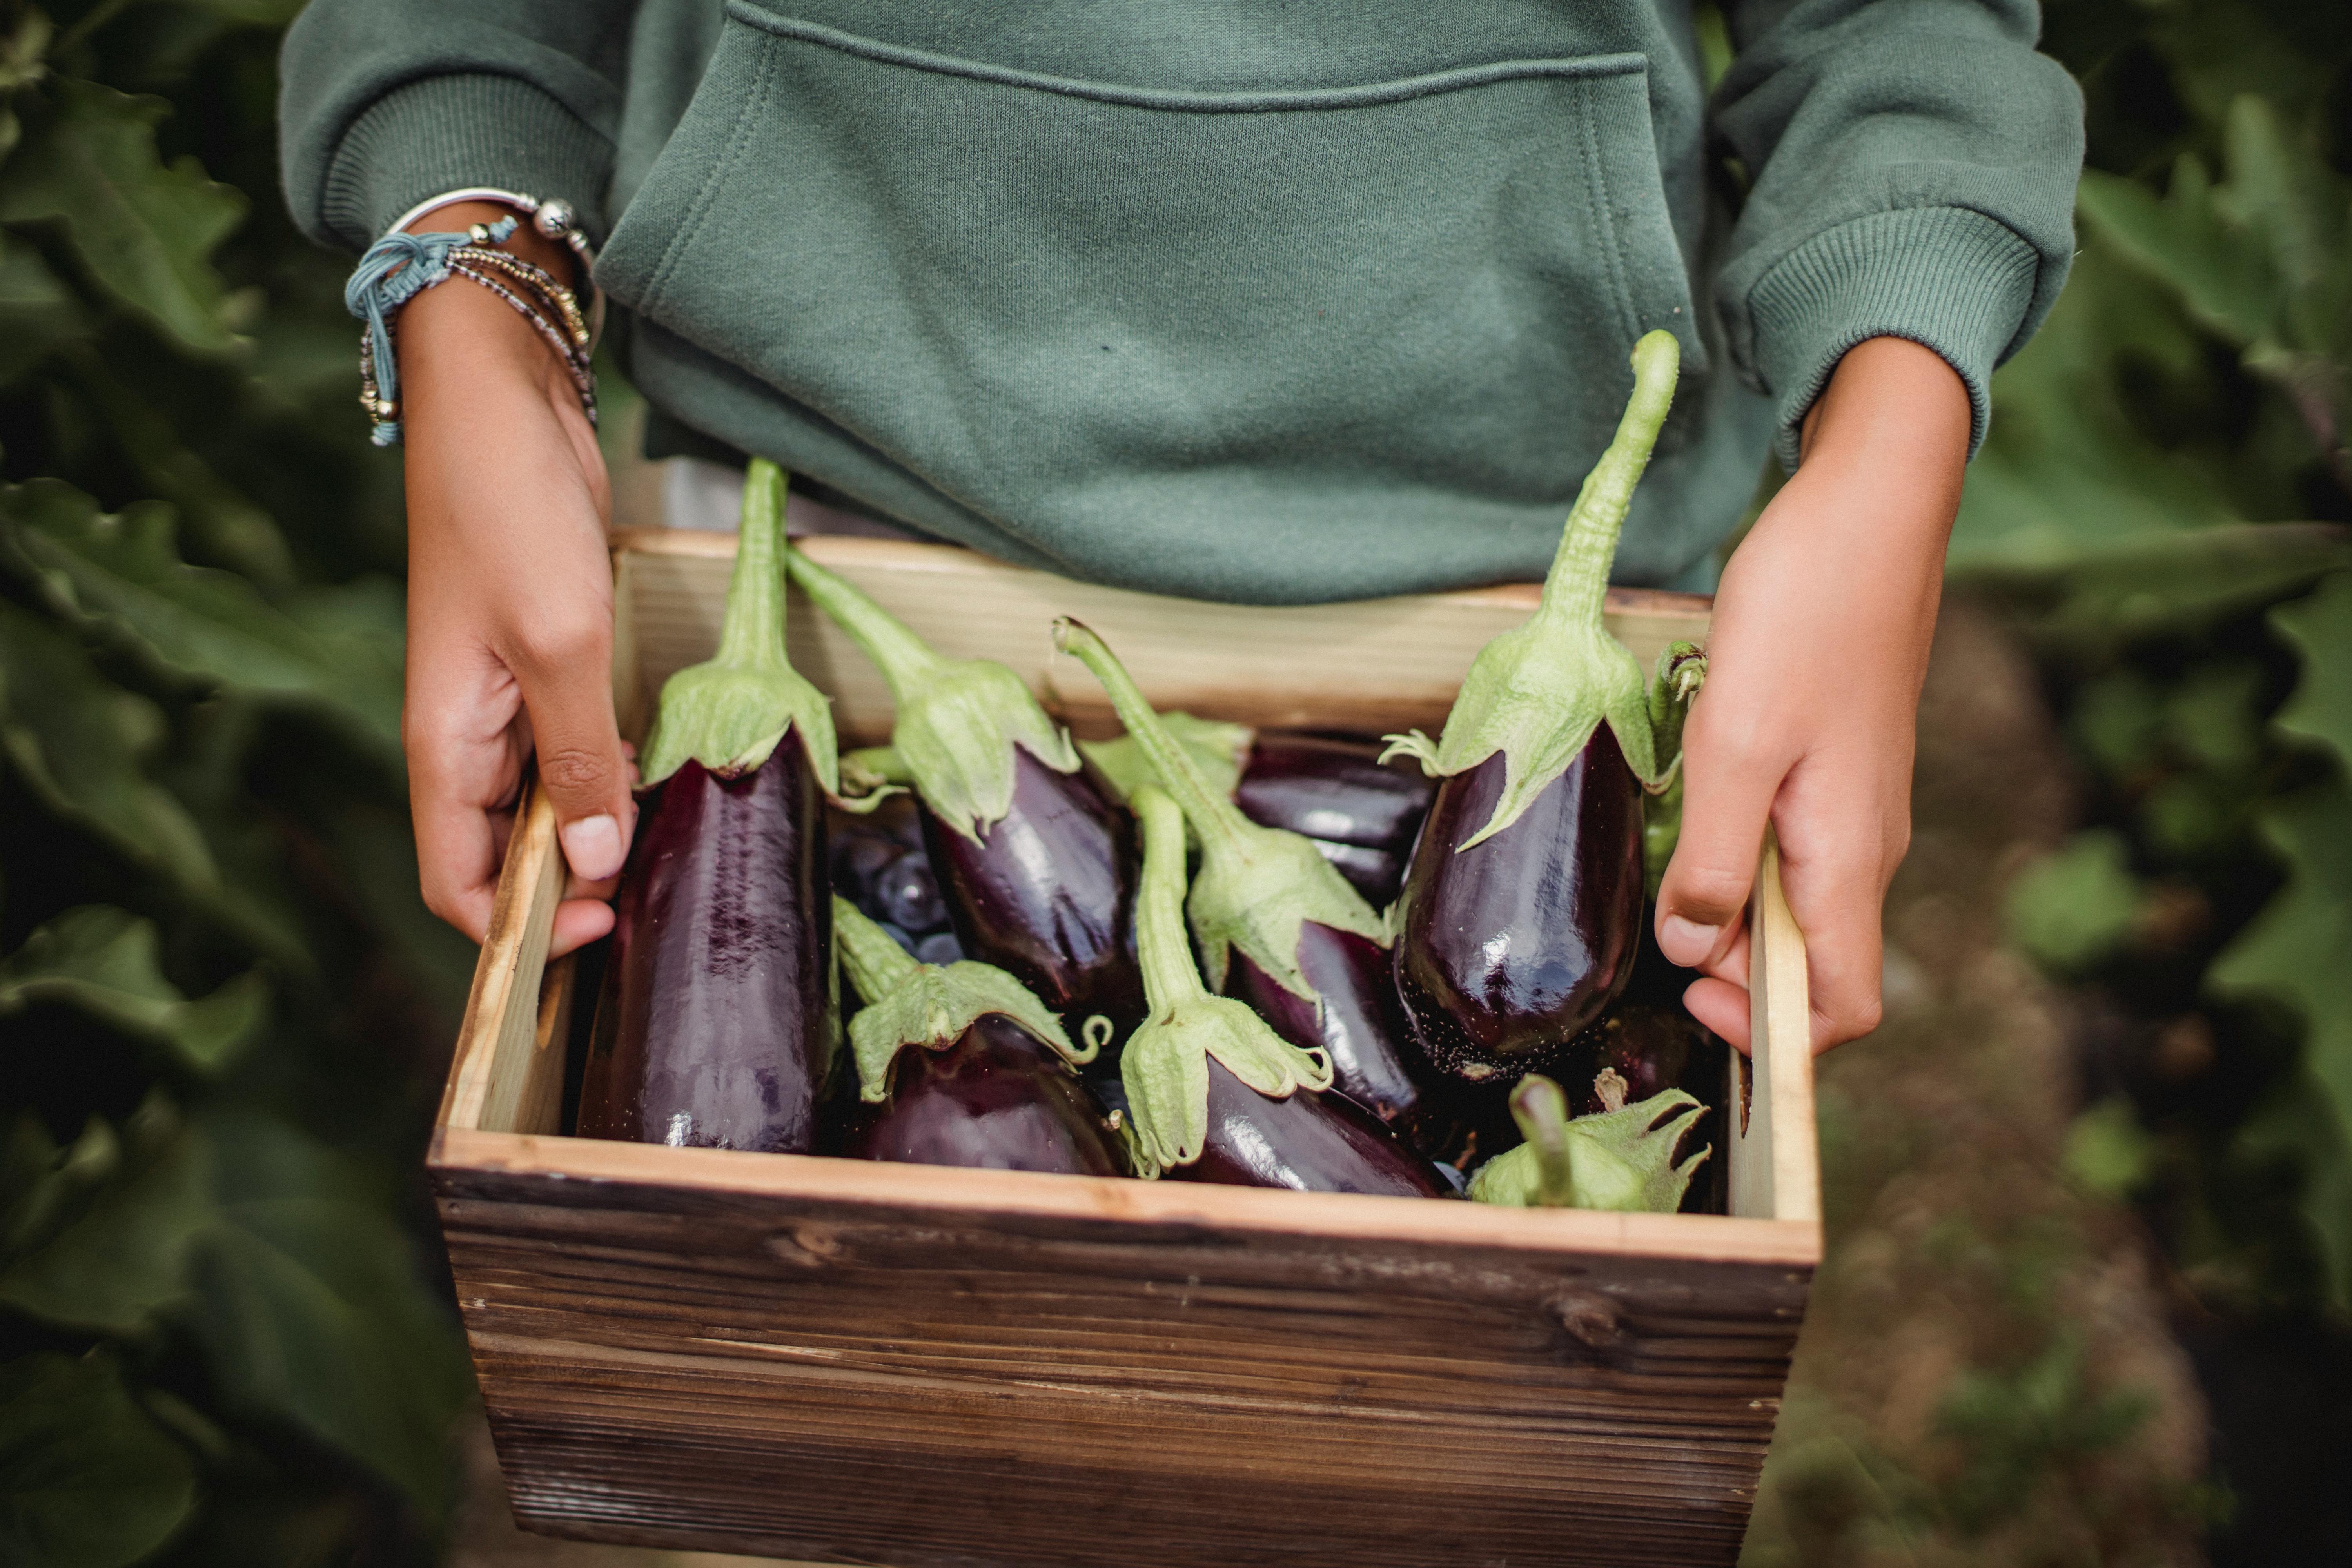 500 Free Eggplant  Vegetables Images  Pixabay